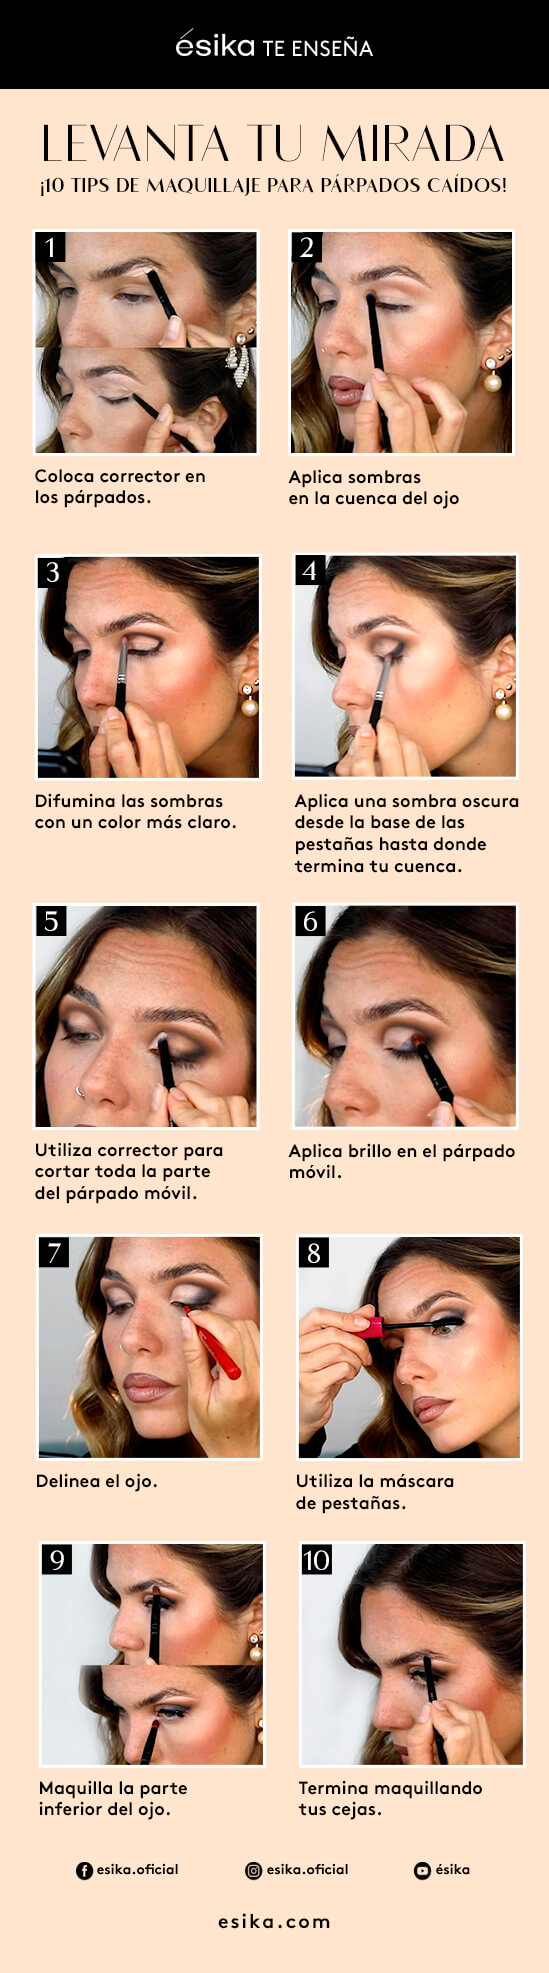 10 tips maquillaje caídos - ésika